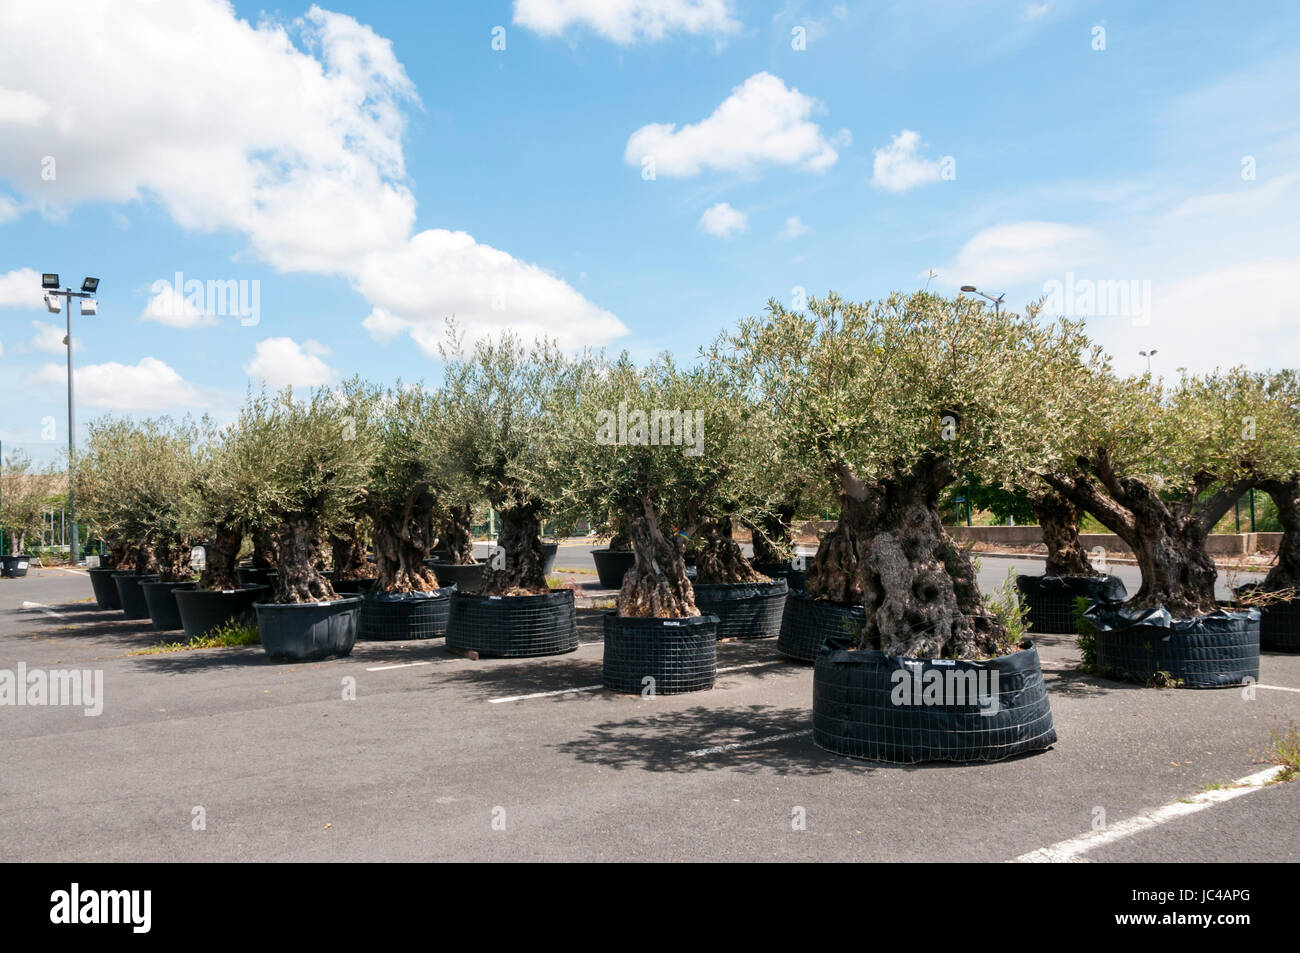 Grandes y viejos olivos en potes para la venta en el centro de un jardín francés. Foto de stock